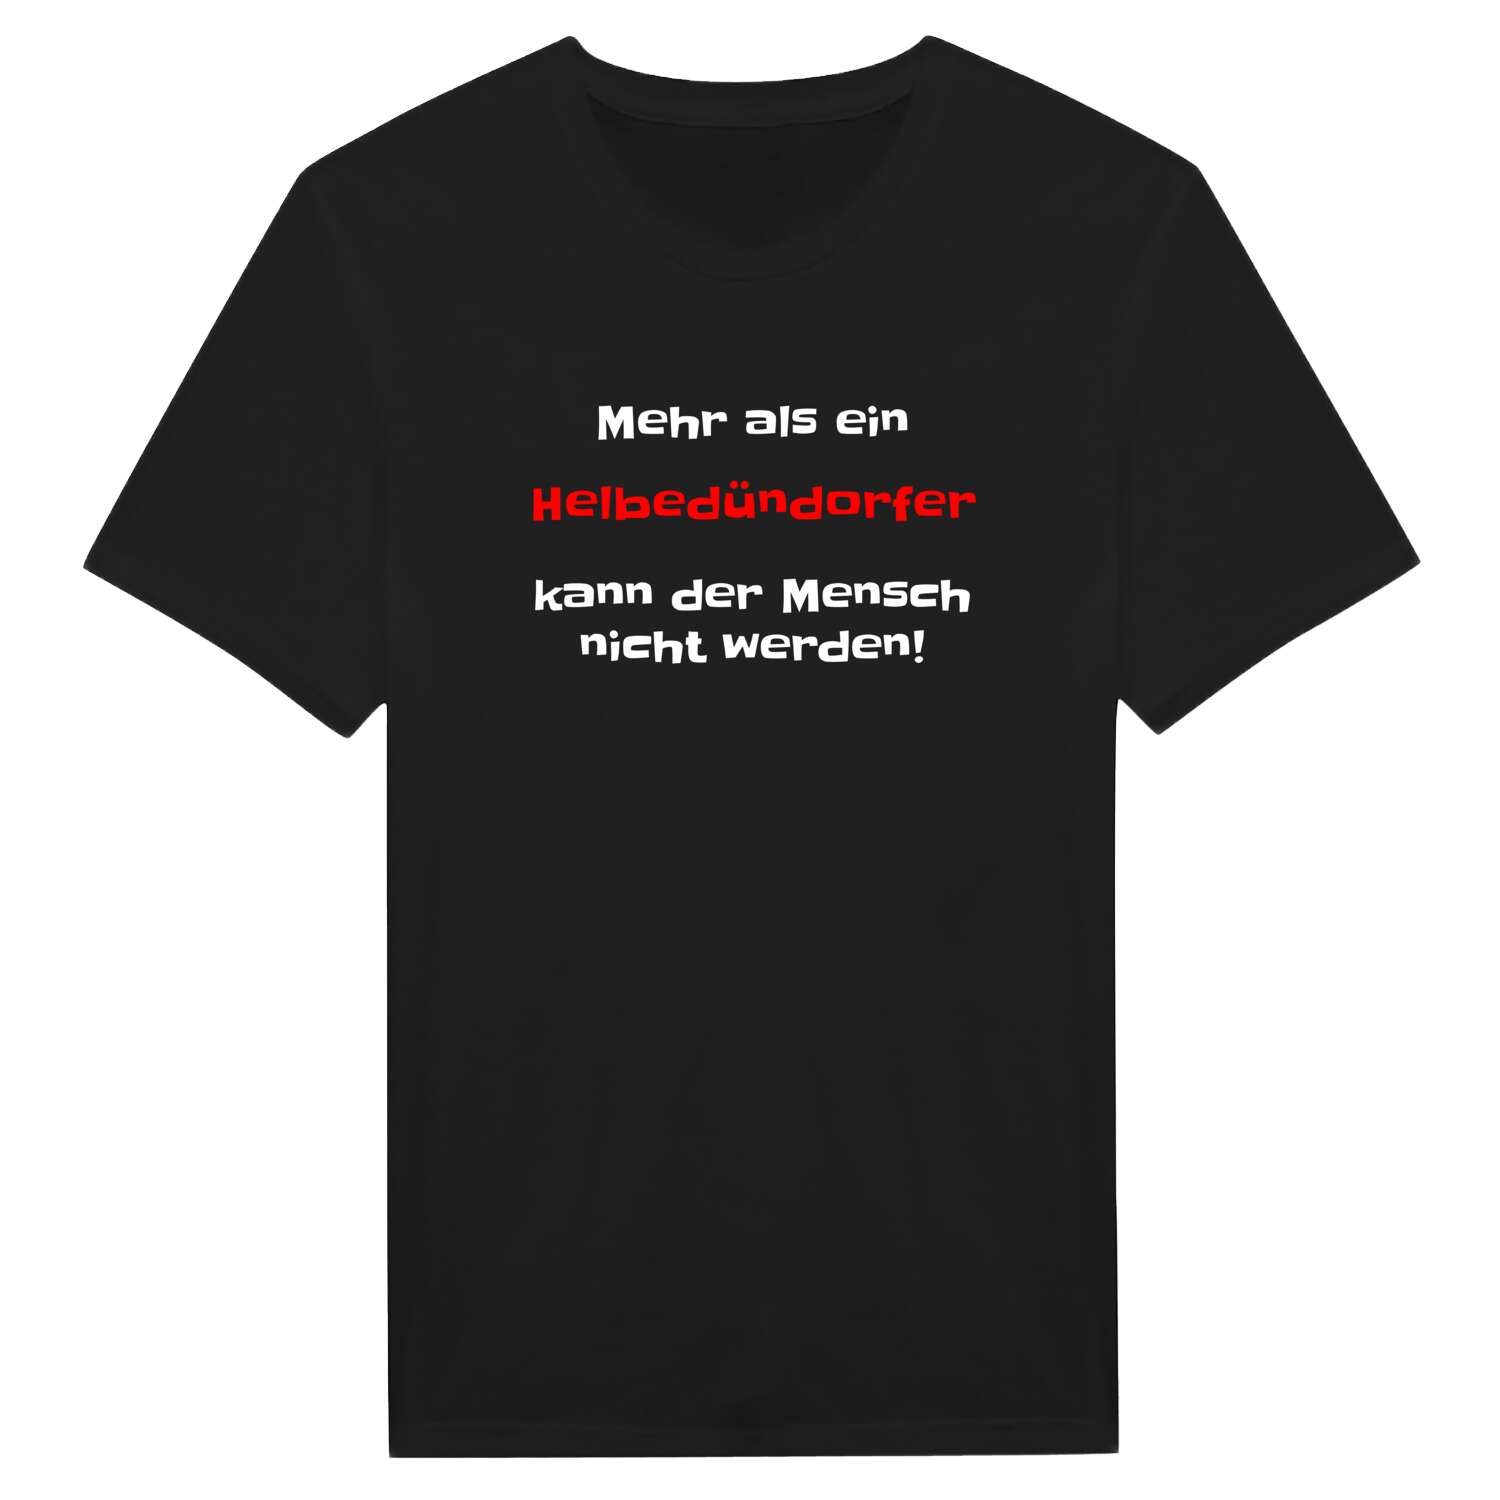 Helbedündorf T-Shirt »Mehr als ein«